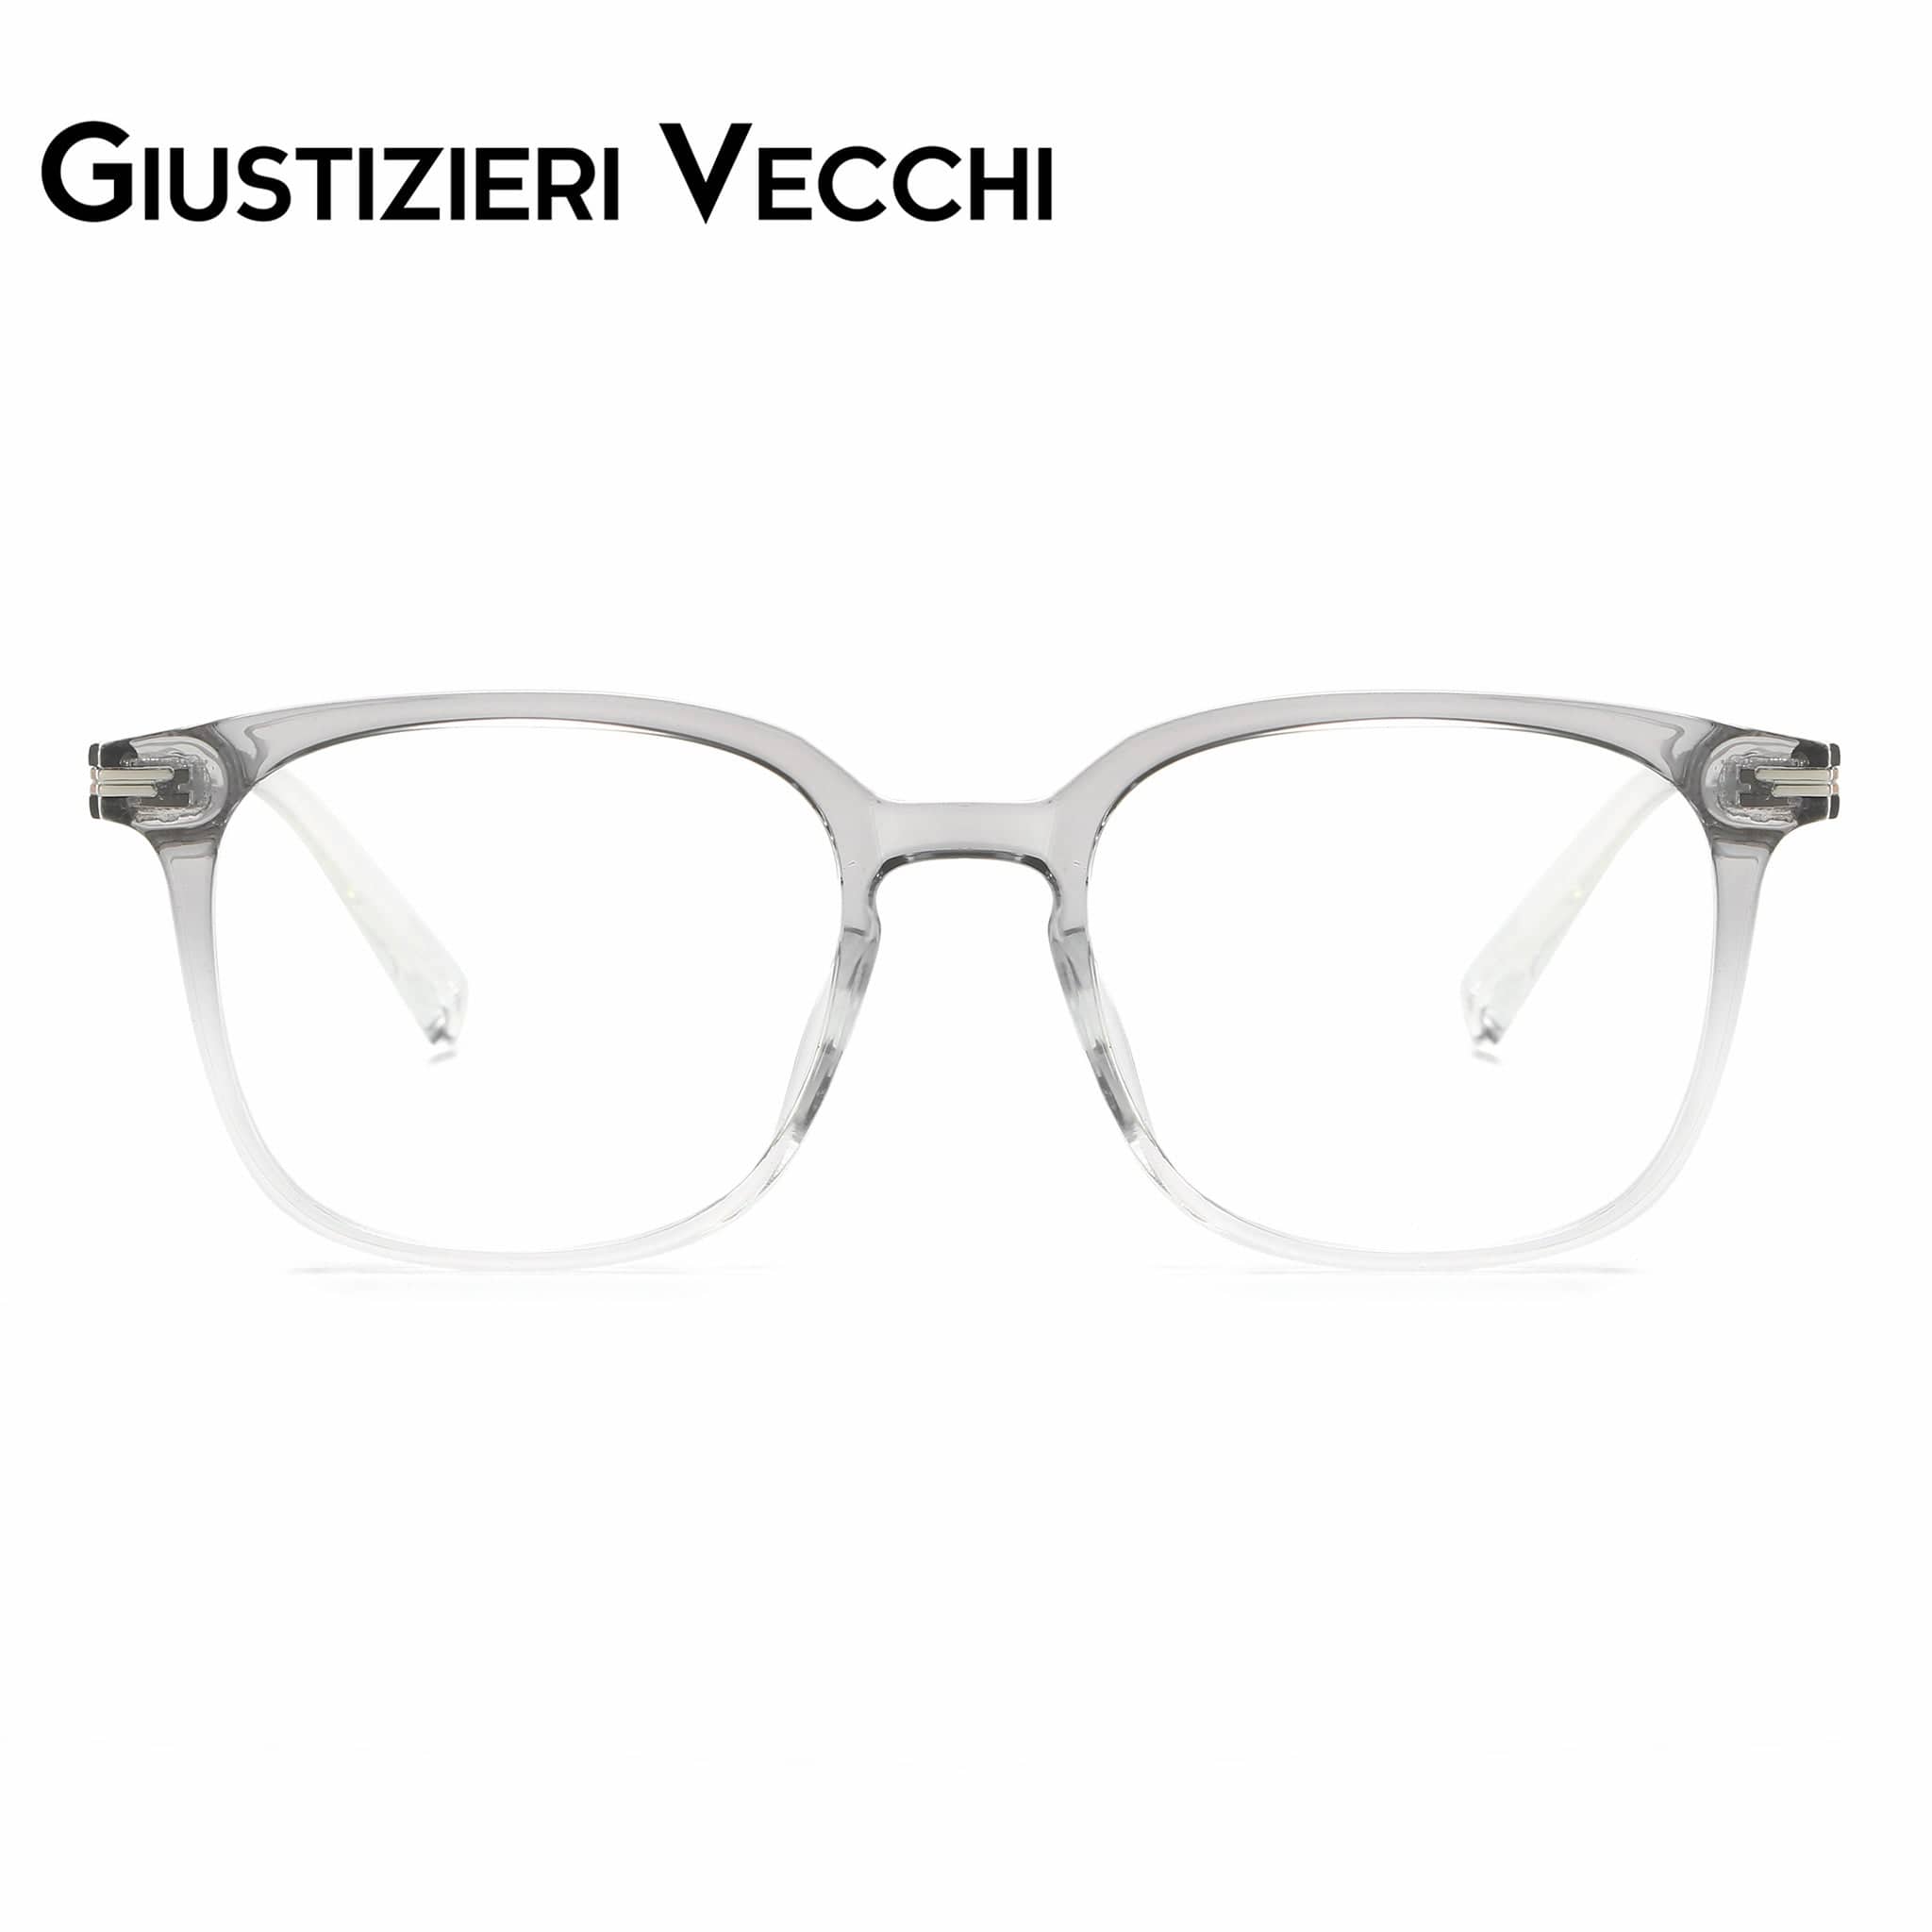 GIUSTIZIERI VECCHI Eyeglasses Medium / Gradient Grey SkyBloom Duo